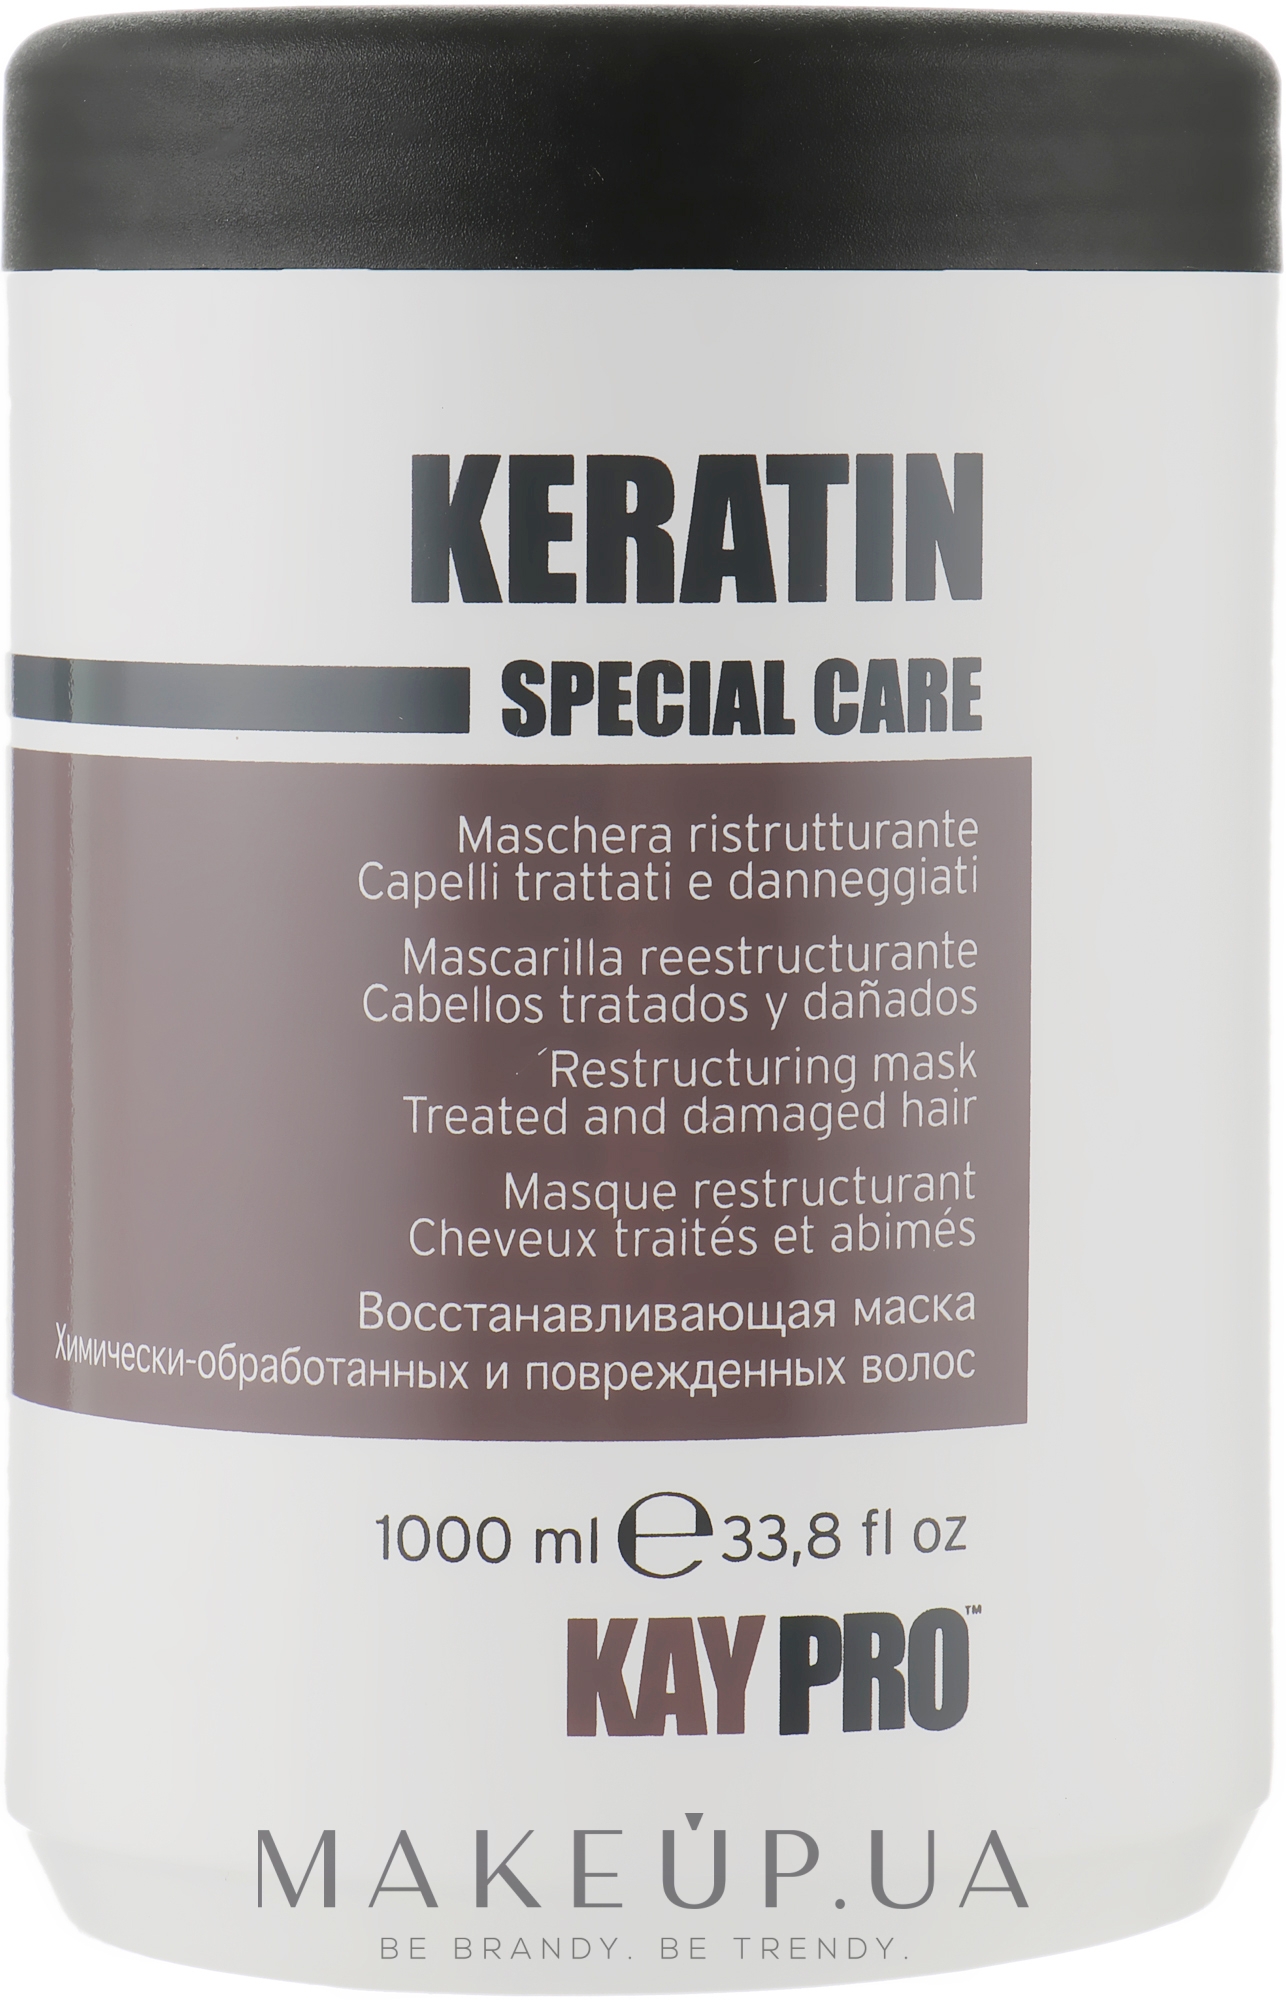 Маска с кератином для волос - KayPro Special Care Keratin Mask — фото 1000ml